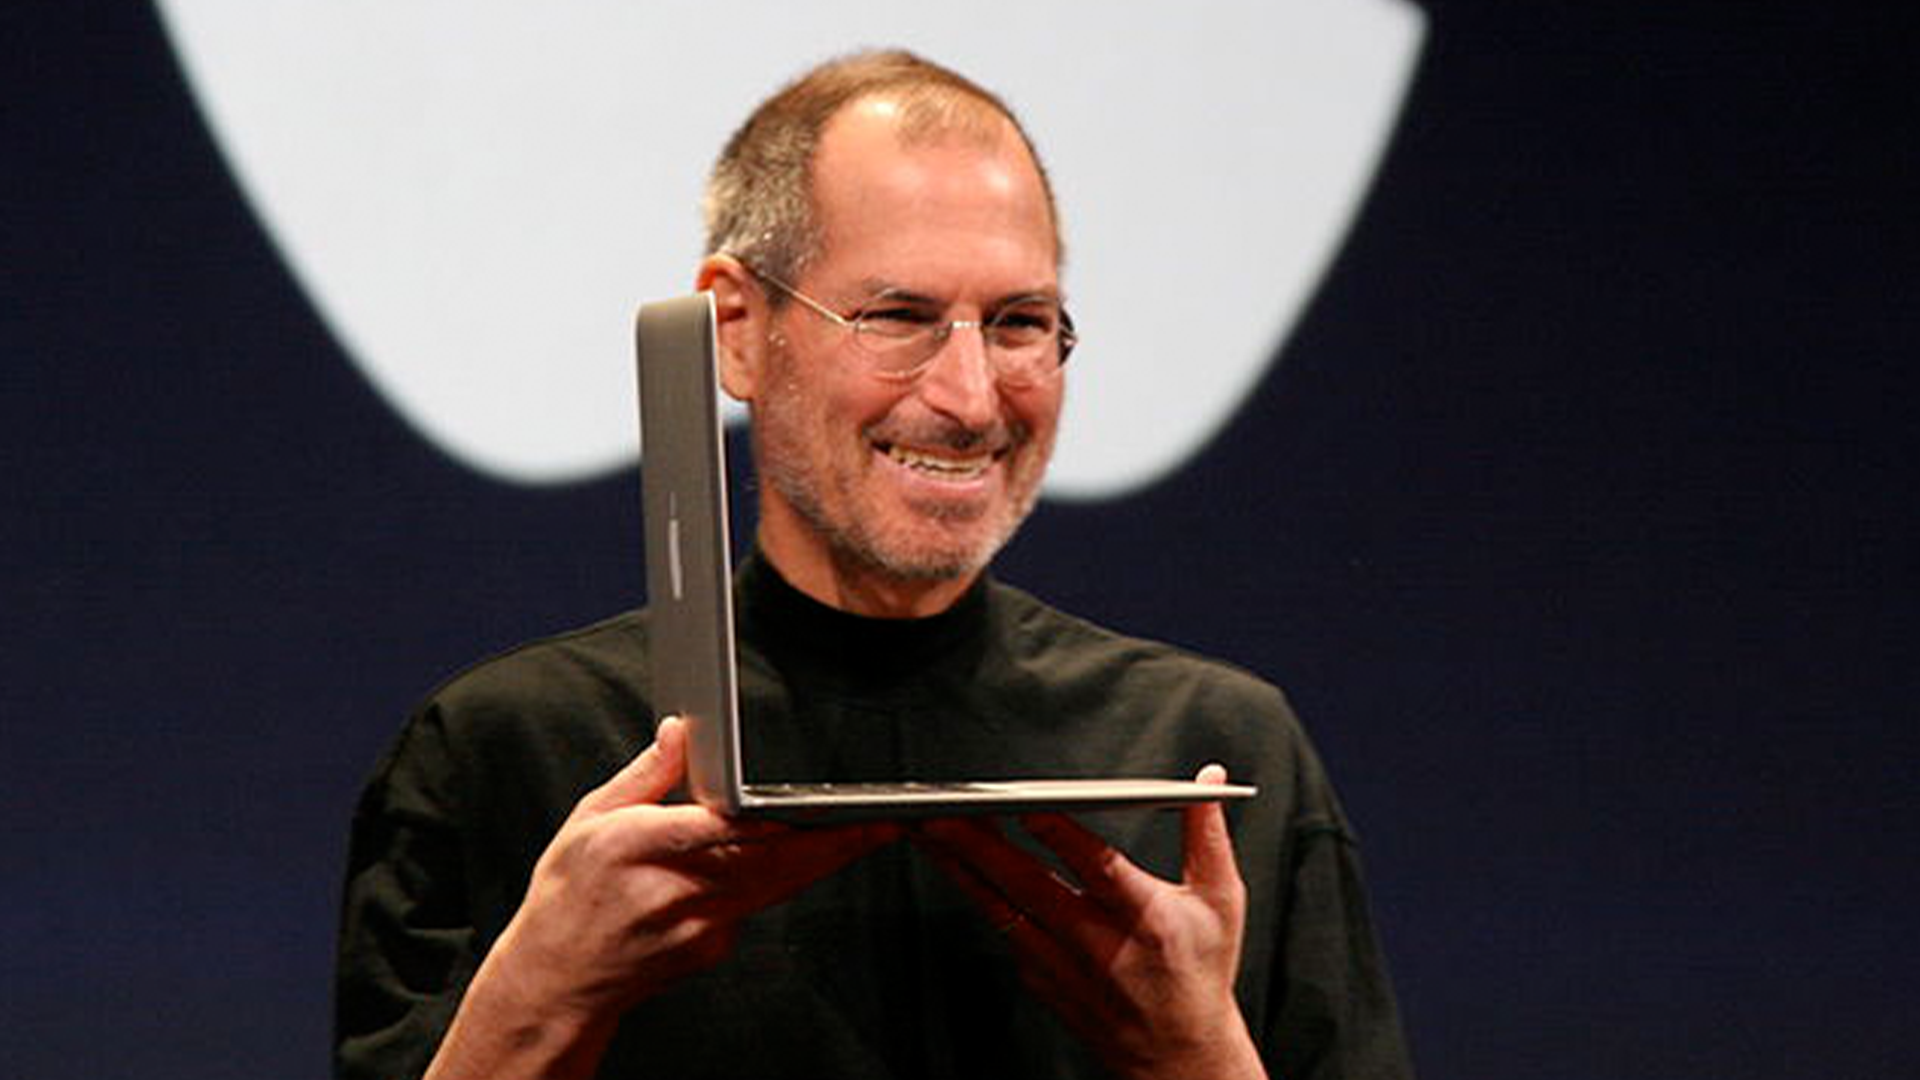 MacBook Air от Apple исполняется 15 лет — мои взлеты и падения за 8 лет владения им